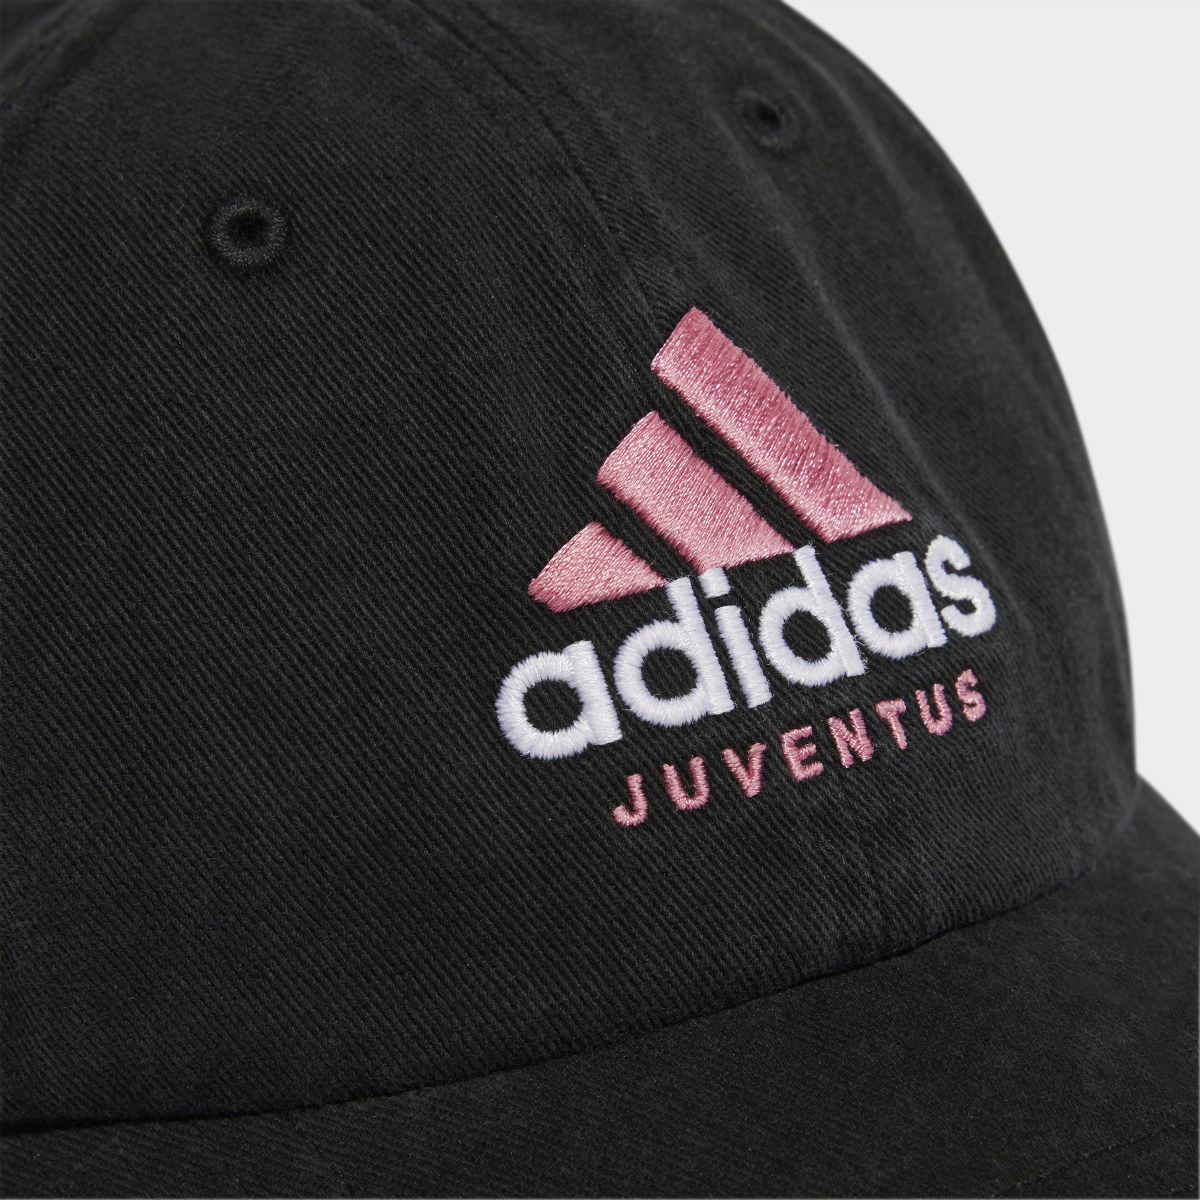 Adidas Casquette Juventus DNA. 4